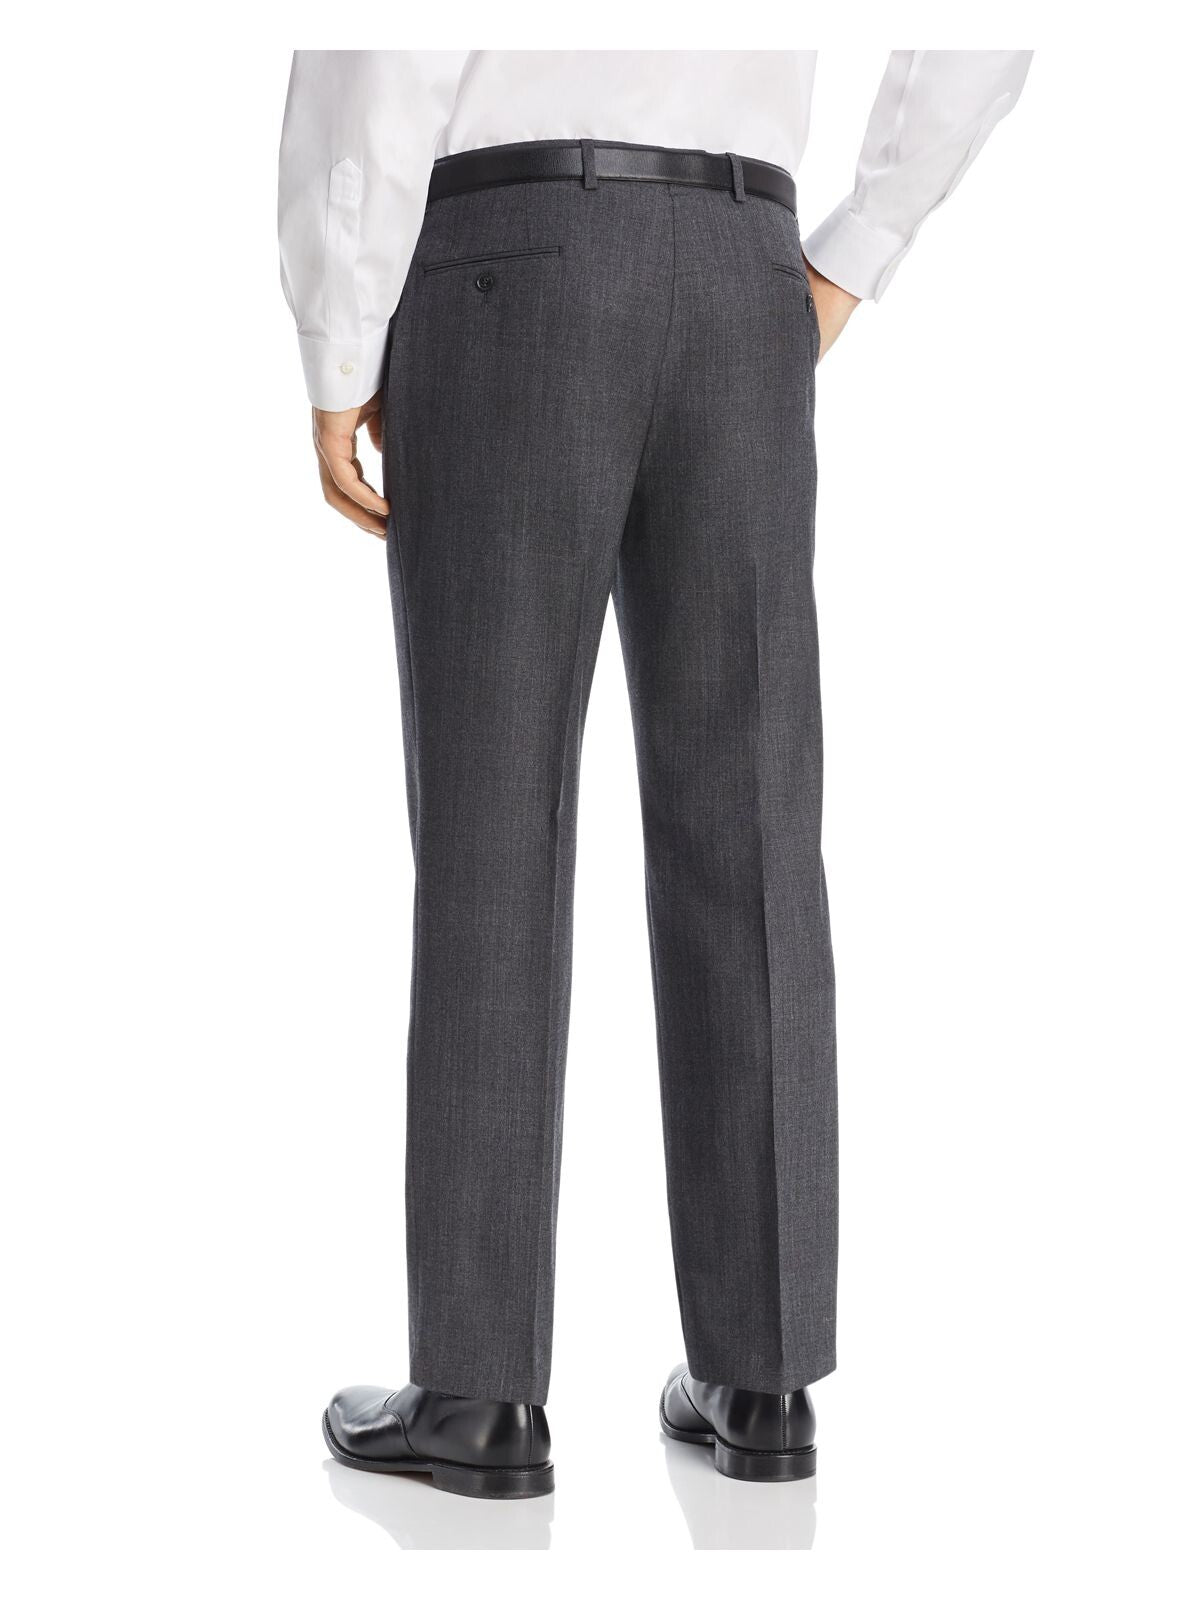 MICHAEL KORS Mens Black Flat Front, Classic Fit Suit Separate Pants W33/ L30